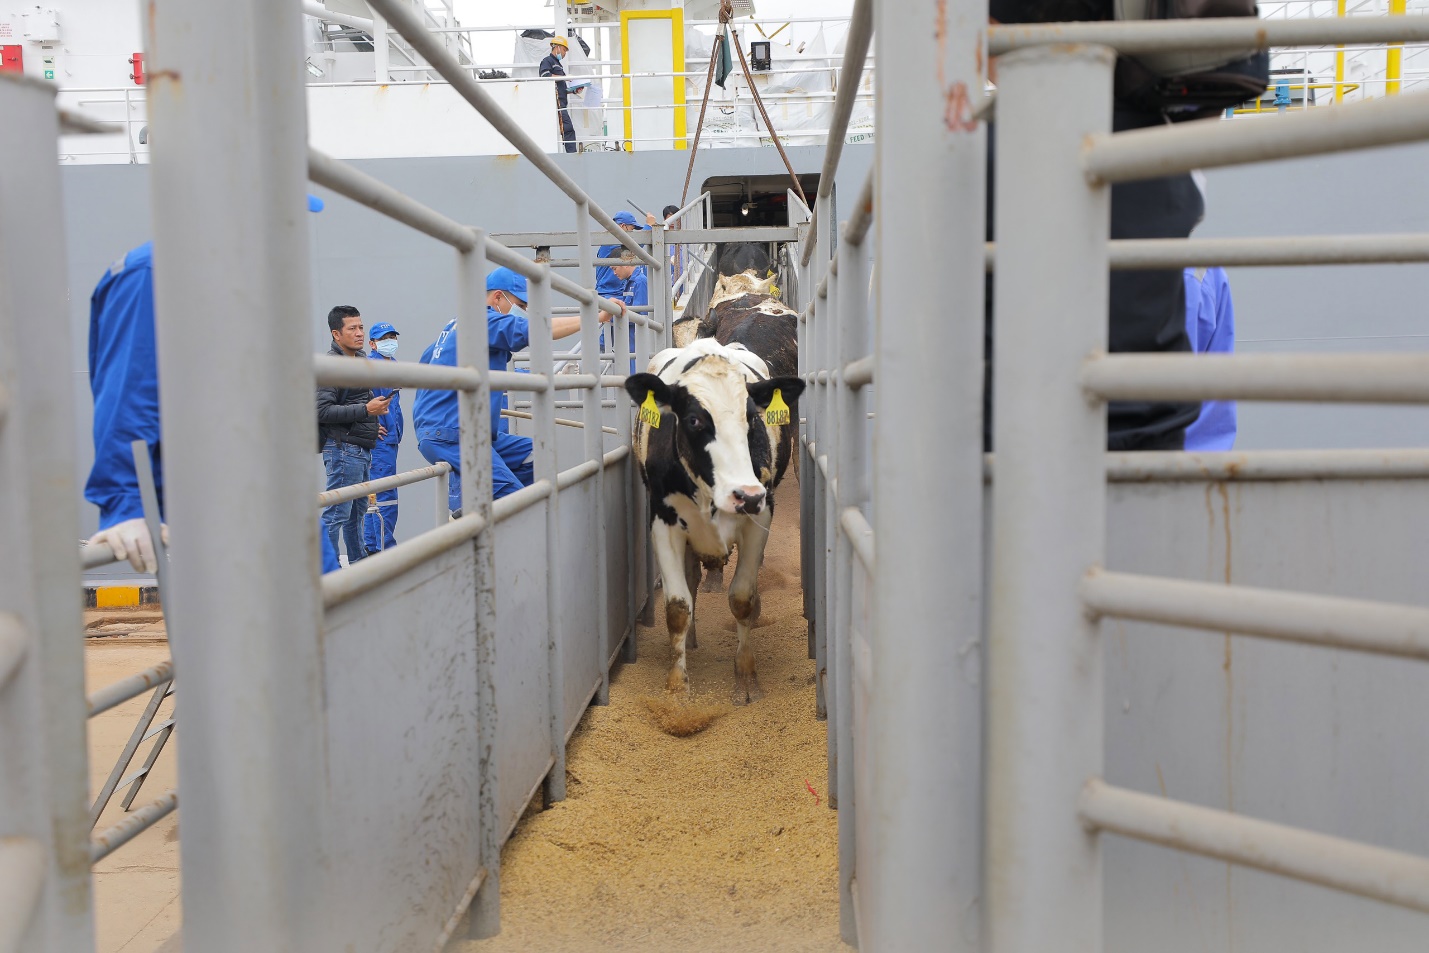 TH nhập khẩu thêm 2.000 bò sữa thuần chủng Holstein Friesian từ Mỹ - Ảnh 1.